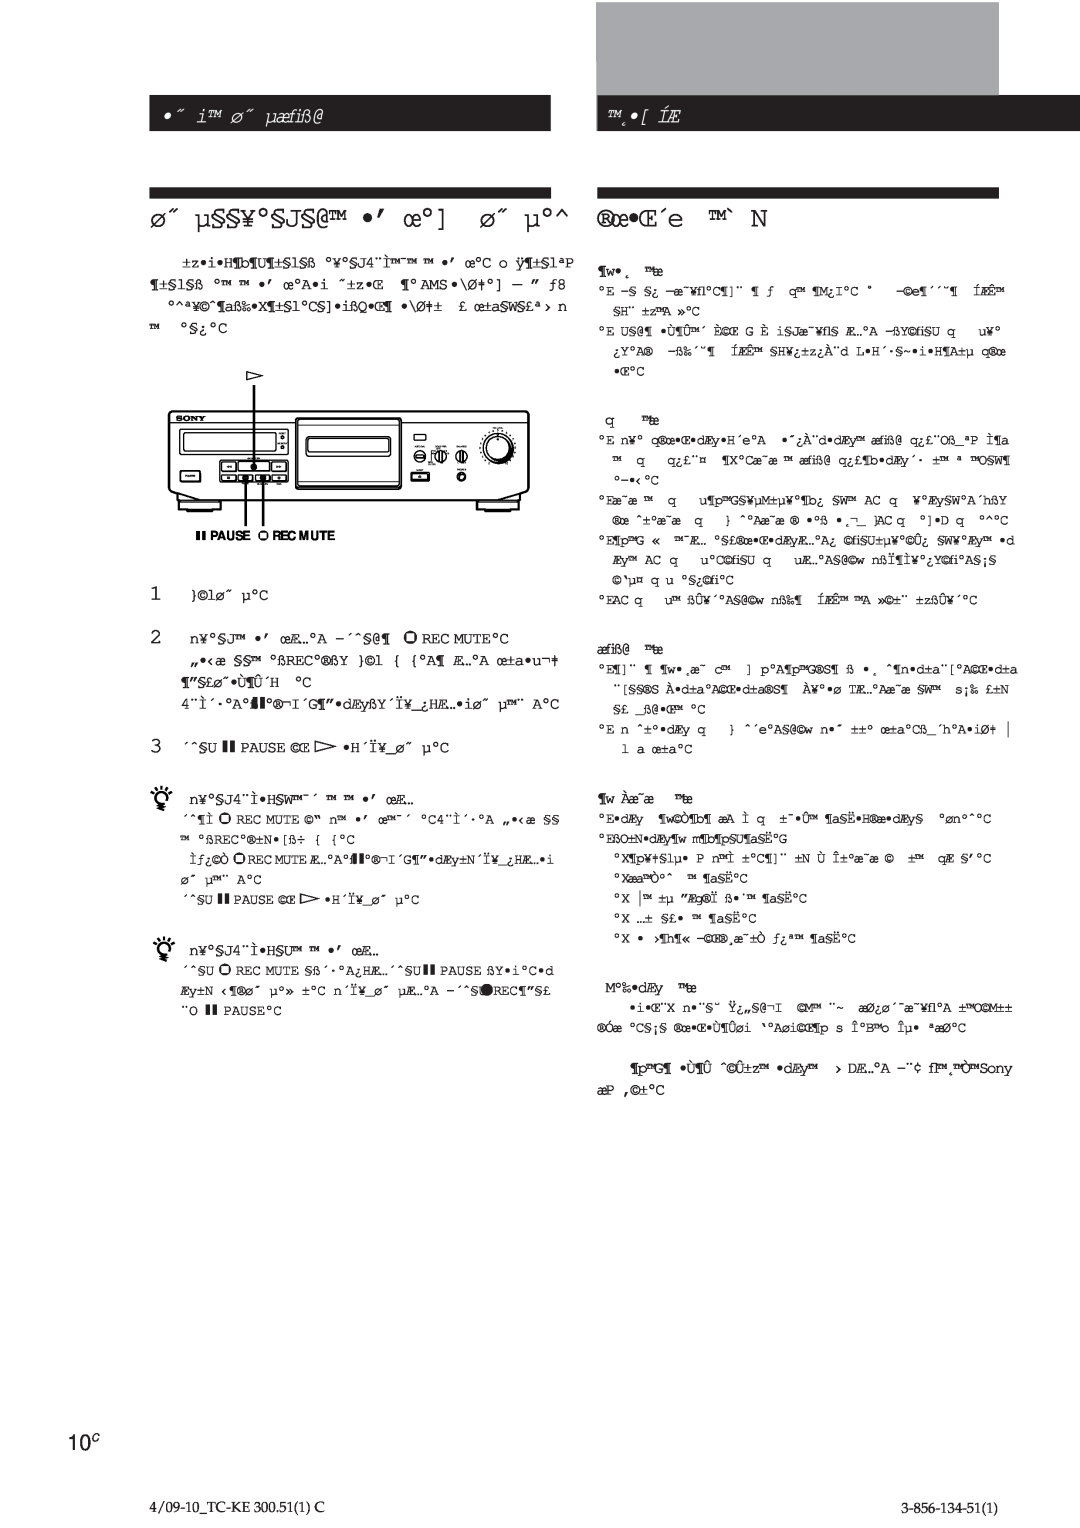 Sony TC-KE300 operating instructions œŒ´e ` N, ø˝ µ§§¥§J§@ ’ œ ø˝ µ, ˝ i ø˝ µæﬁß@, ˛ Íæ 